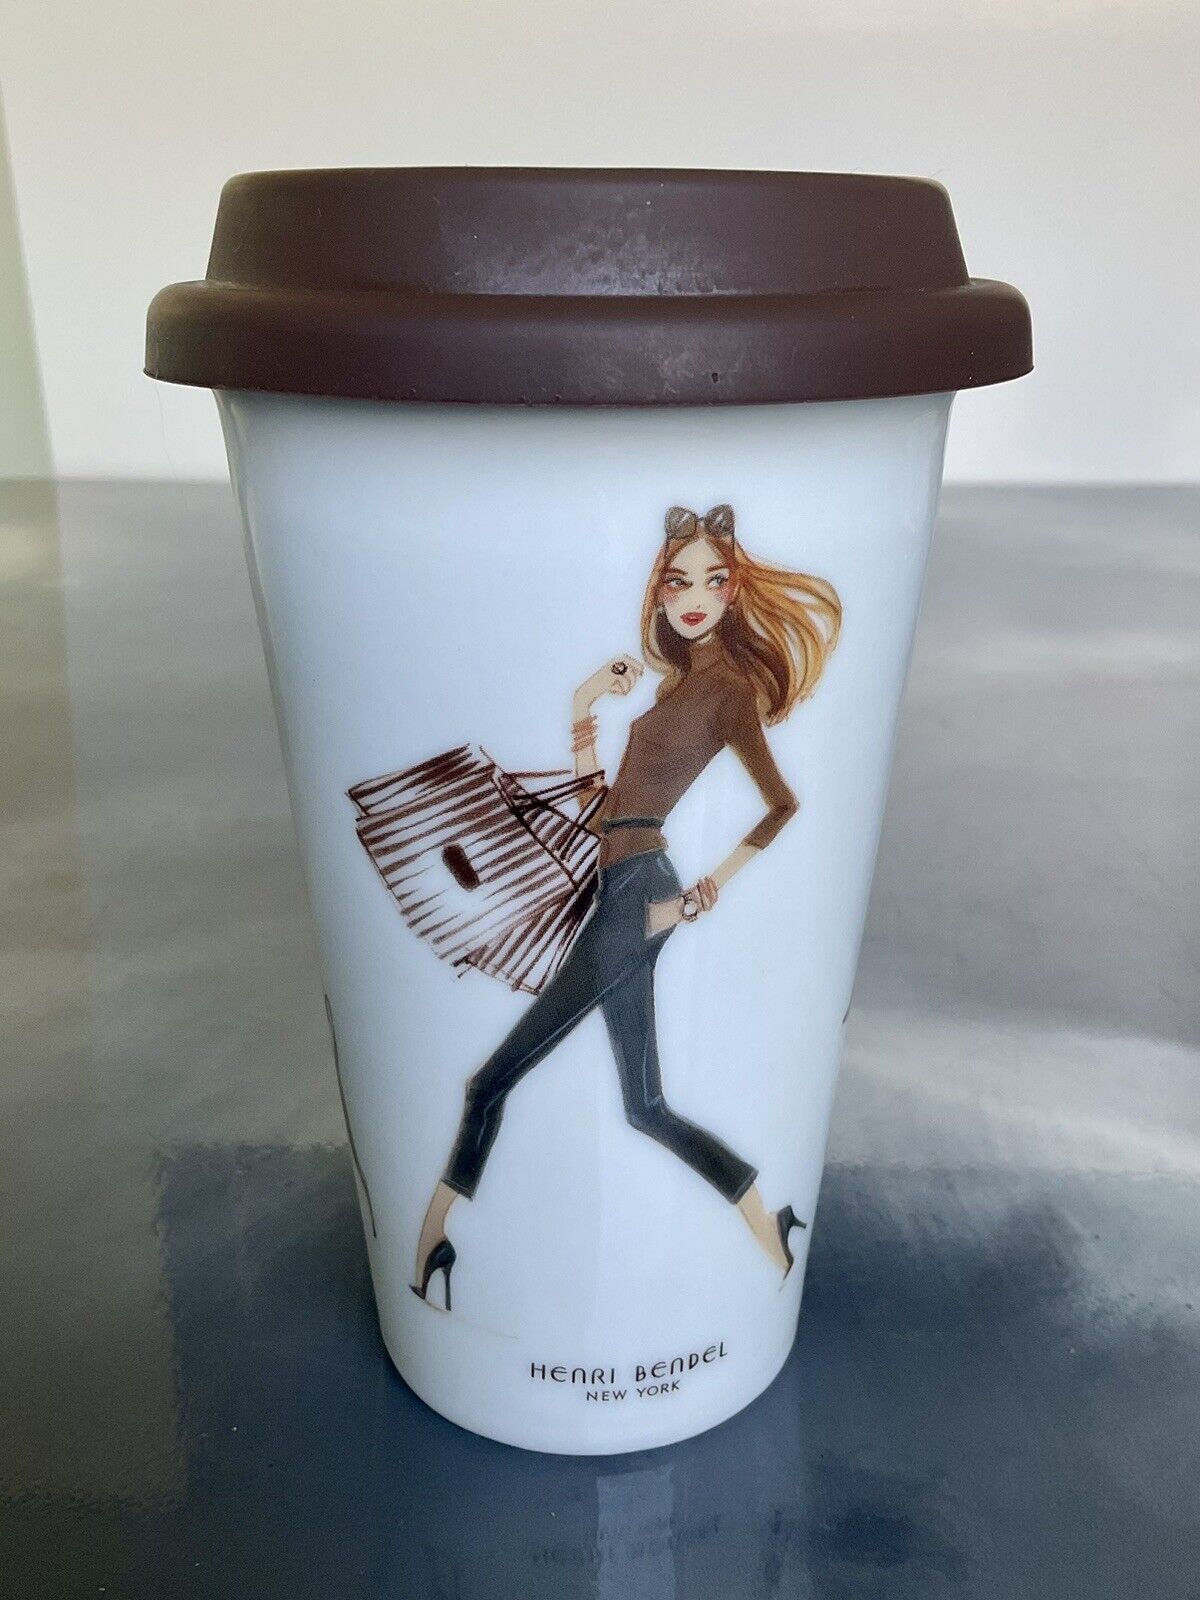 Henri Bendel New York Ceramic Travel Mug Tumbler With Lid Shopper Girl & Dog